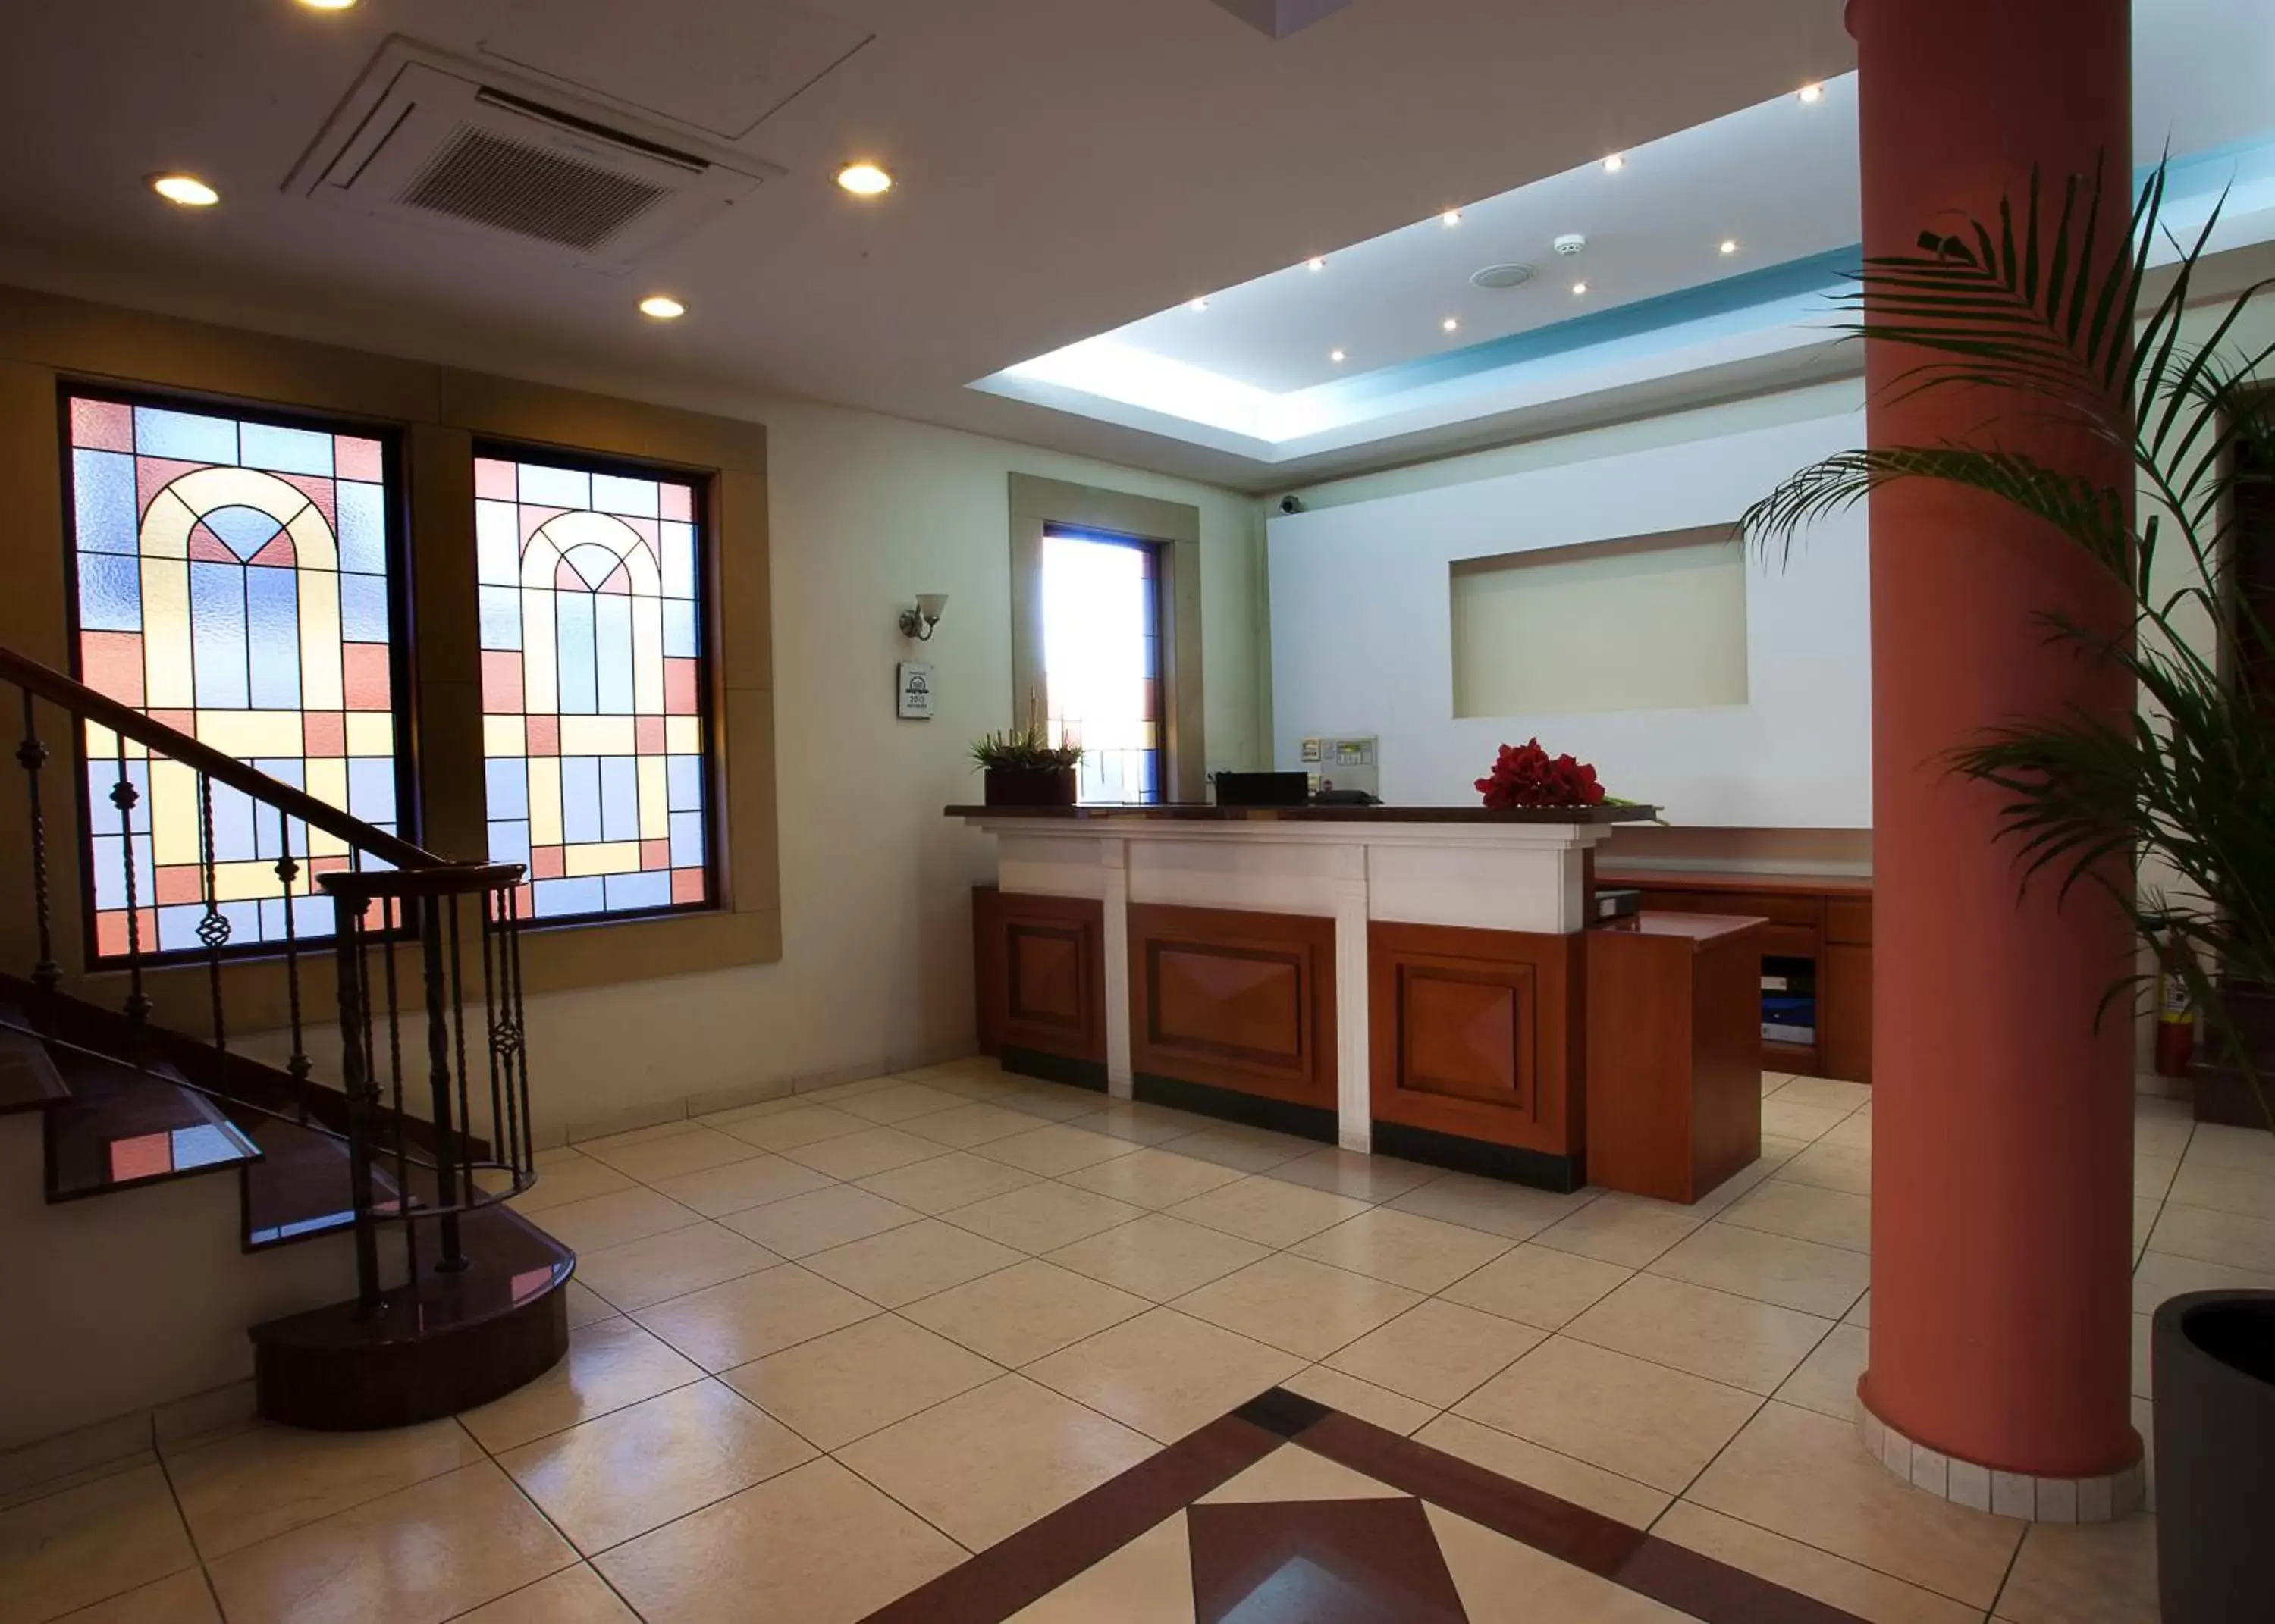 Lobby or reception, Lobby/Reception in Pyramos Hotel